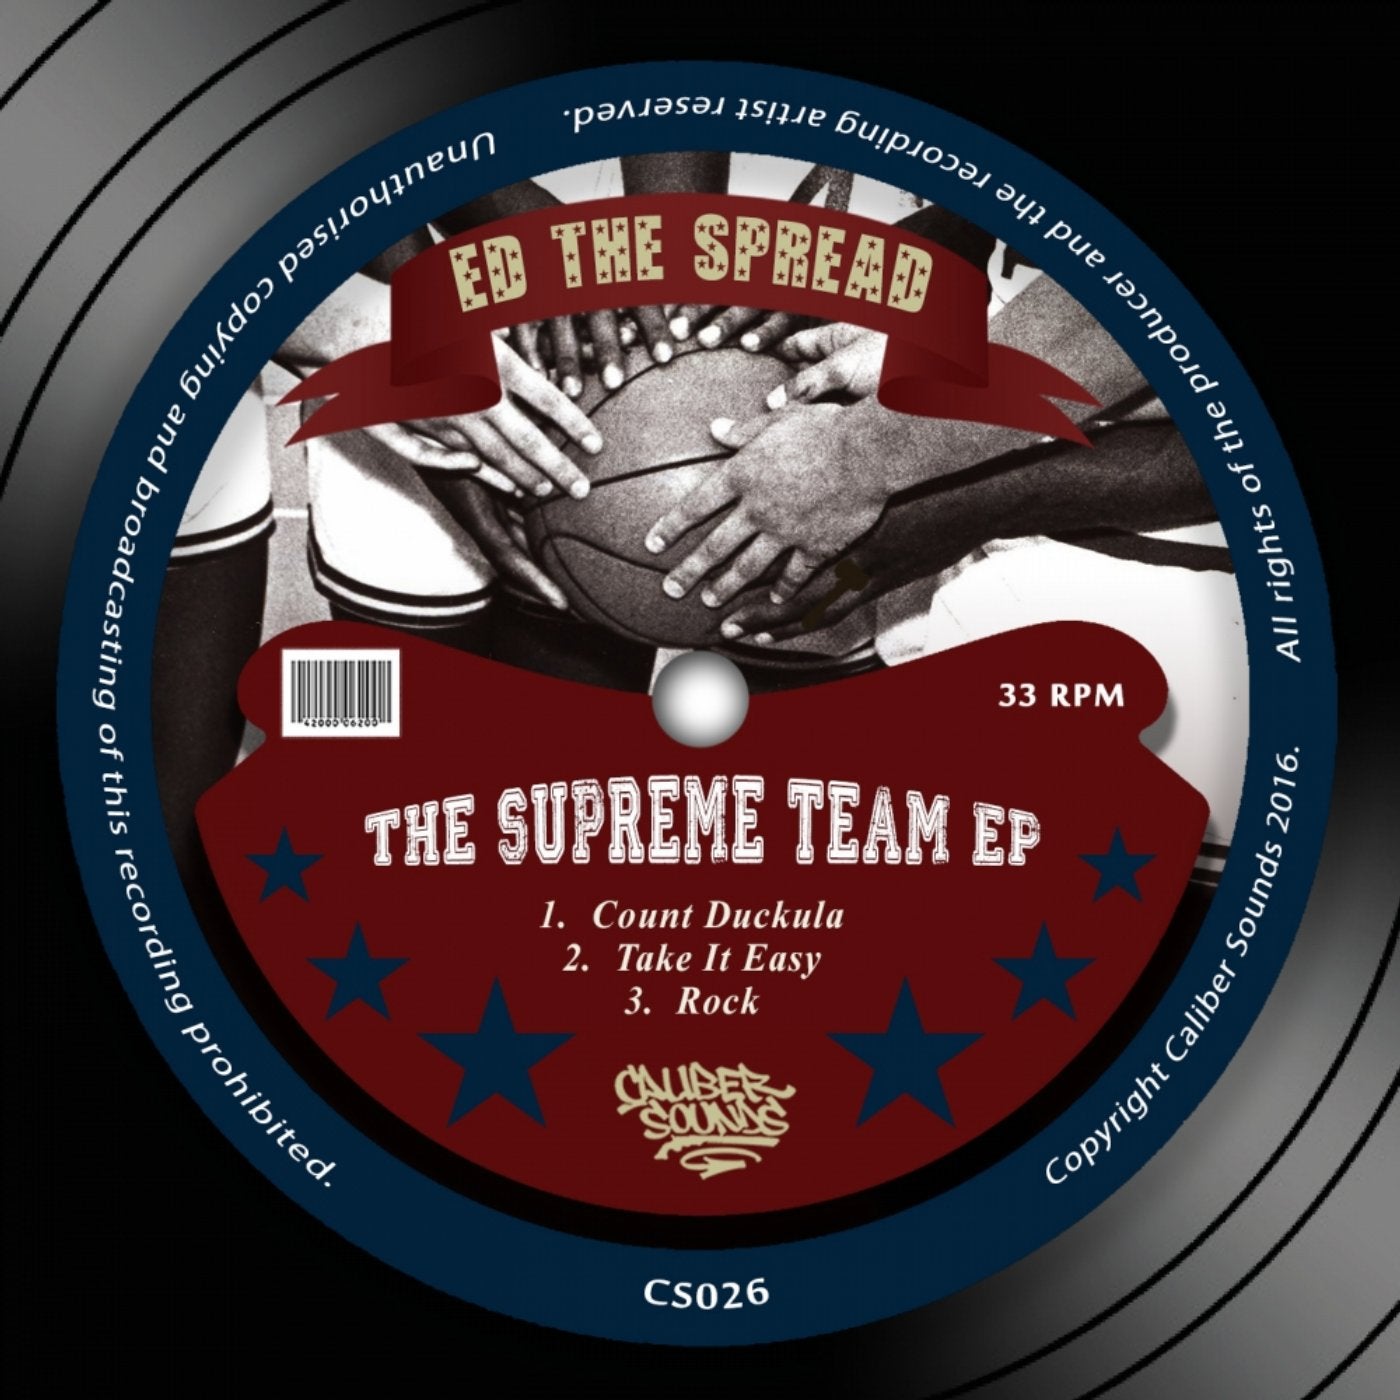 The Supreme Team EP